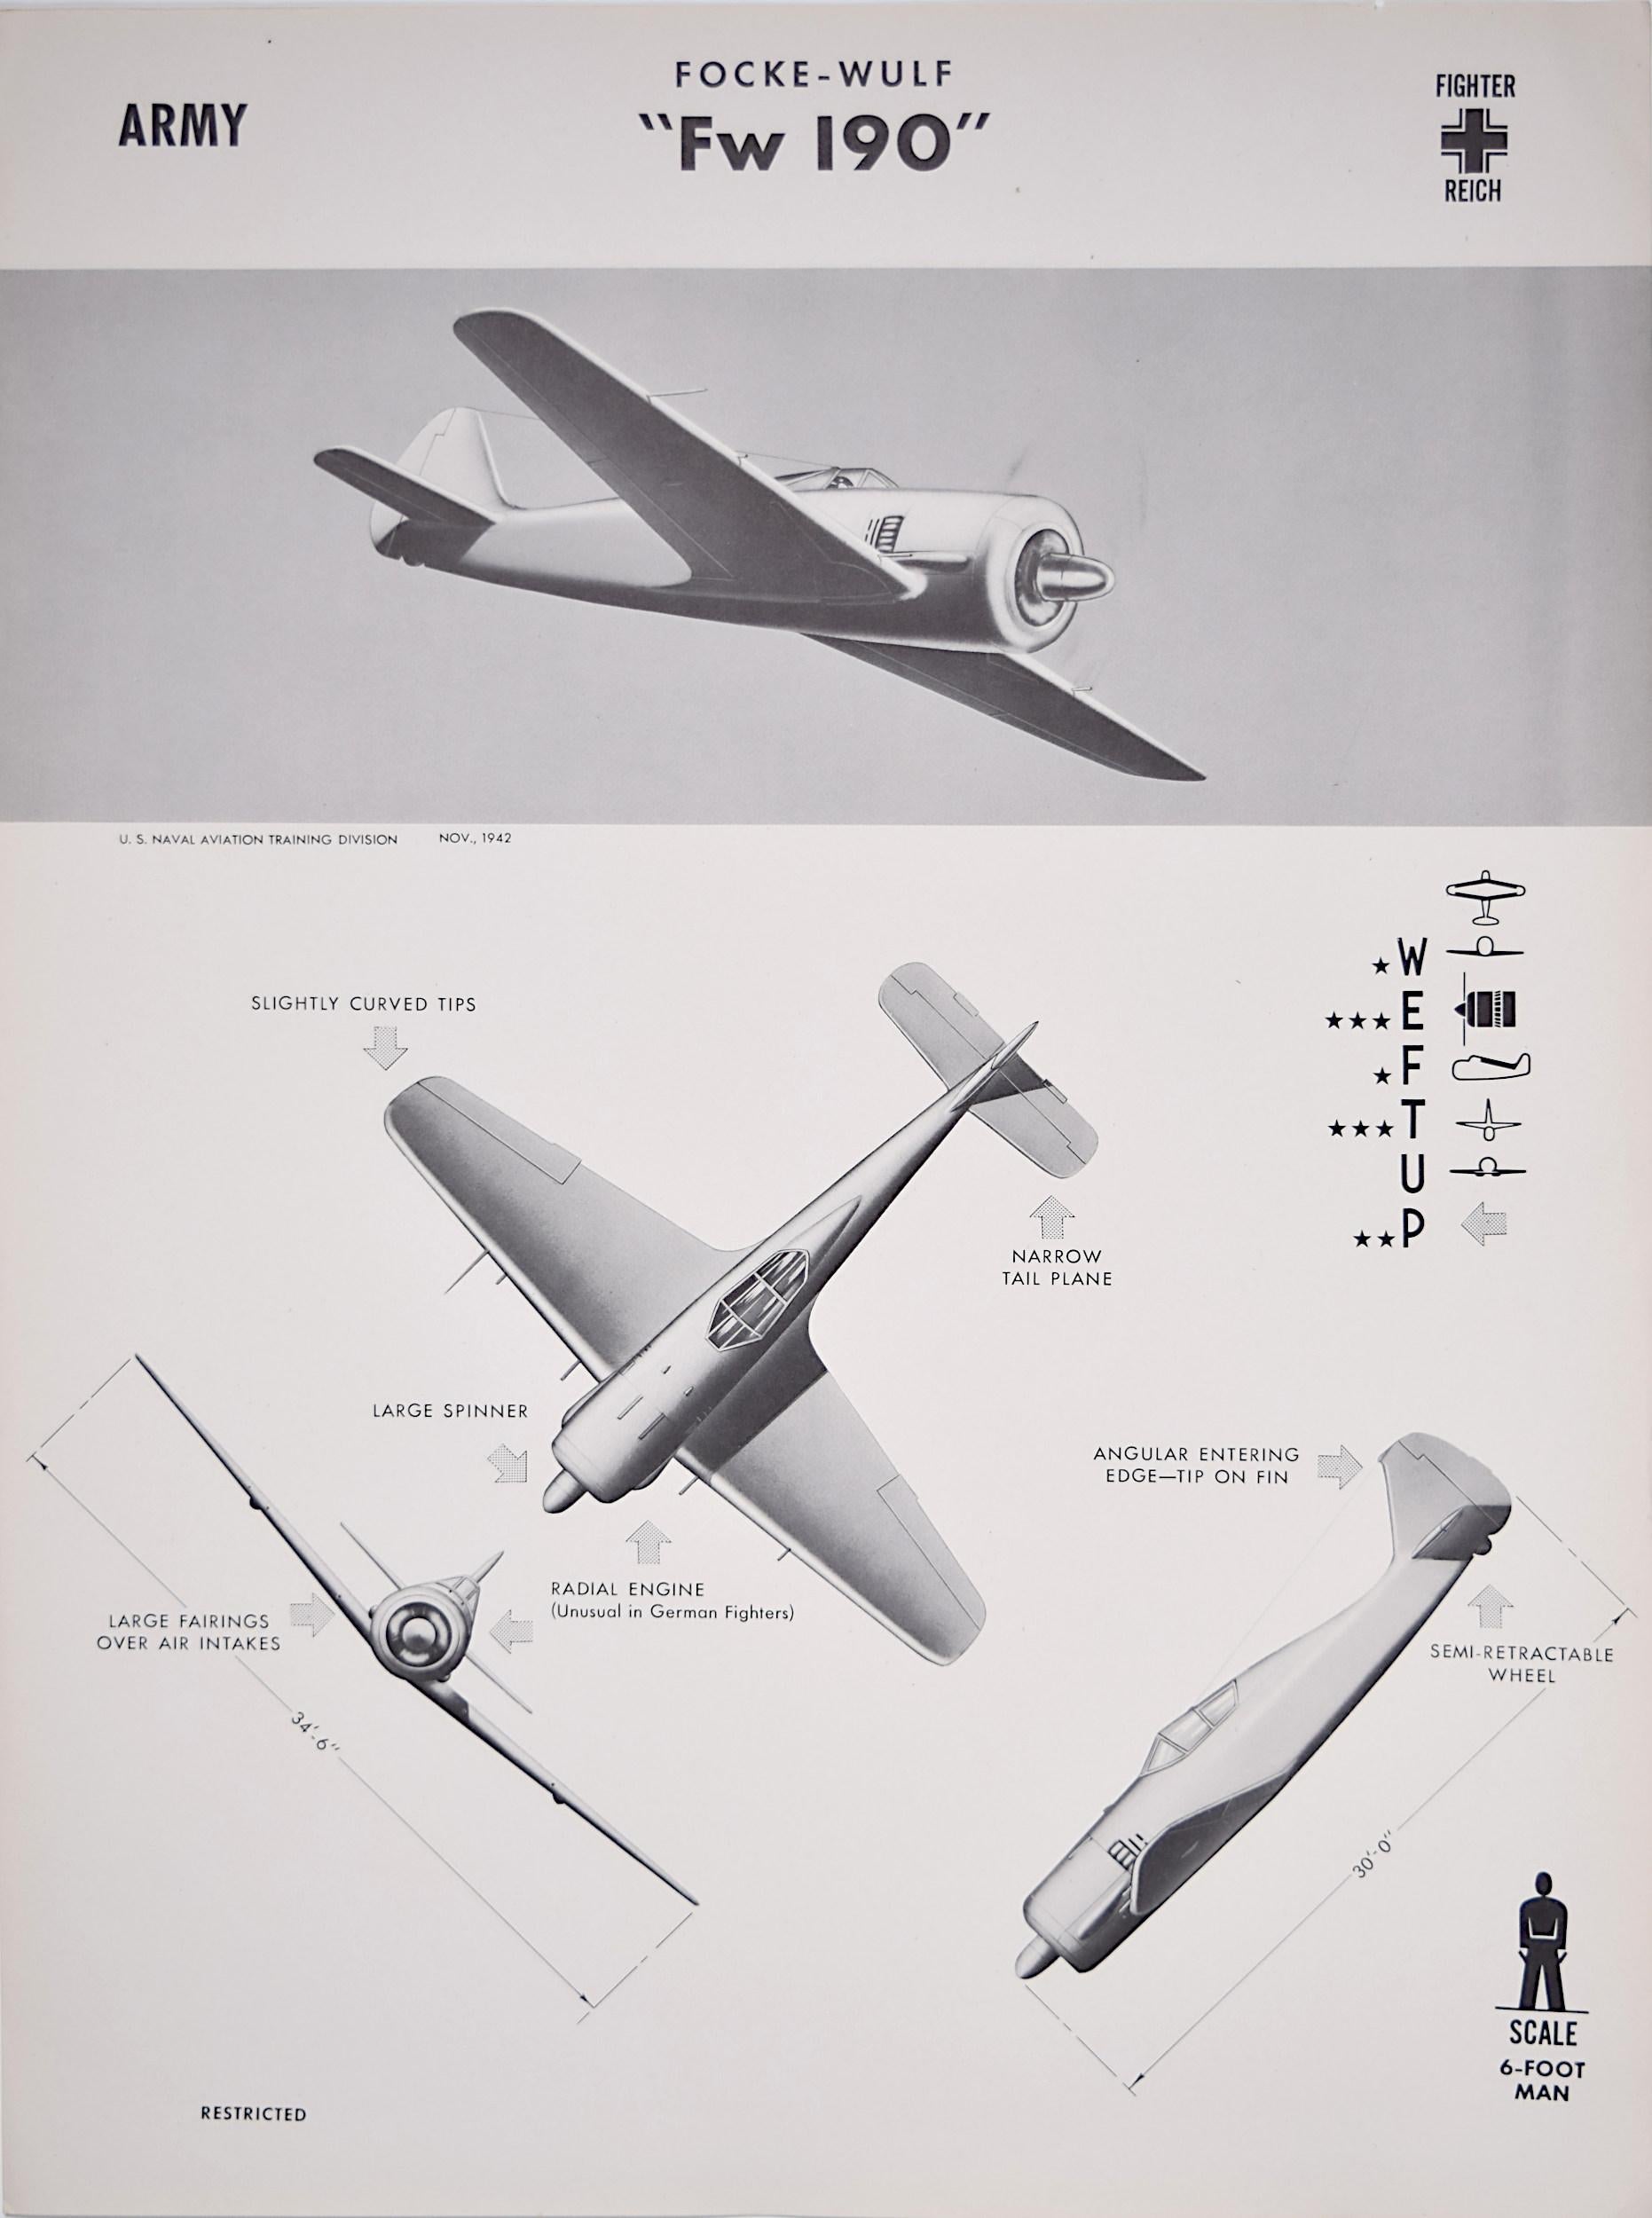 Print Unknown - Affiche de reconnaissance d'avion Focke-Wulf FW 190 Wrger Luftwaffe de la Seconde Guerre mondiale, 1943